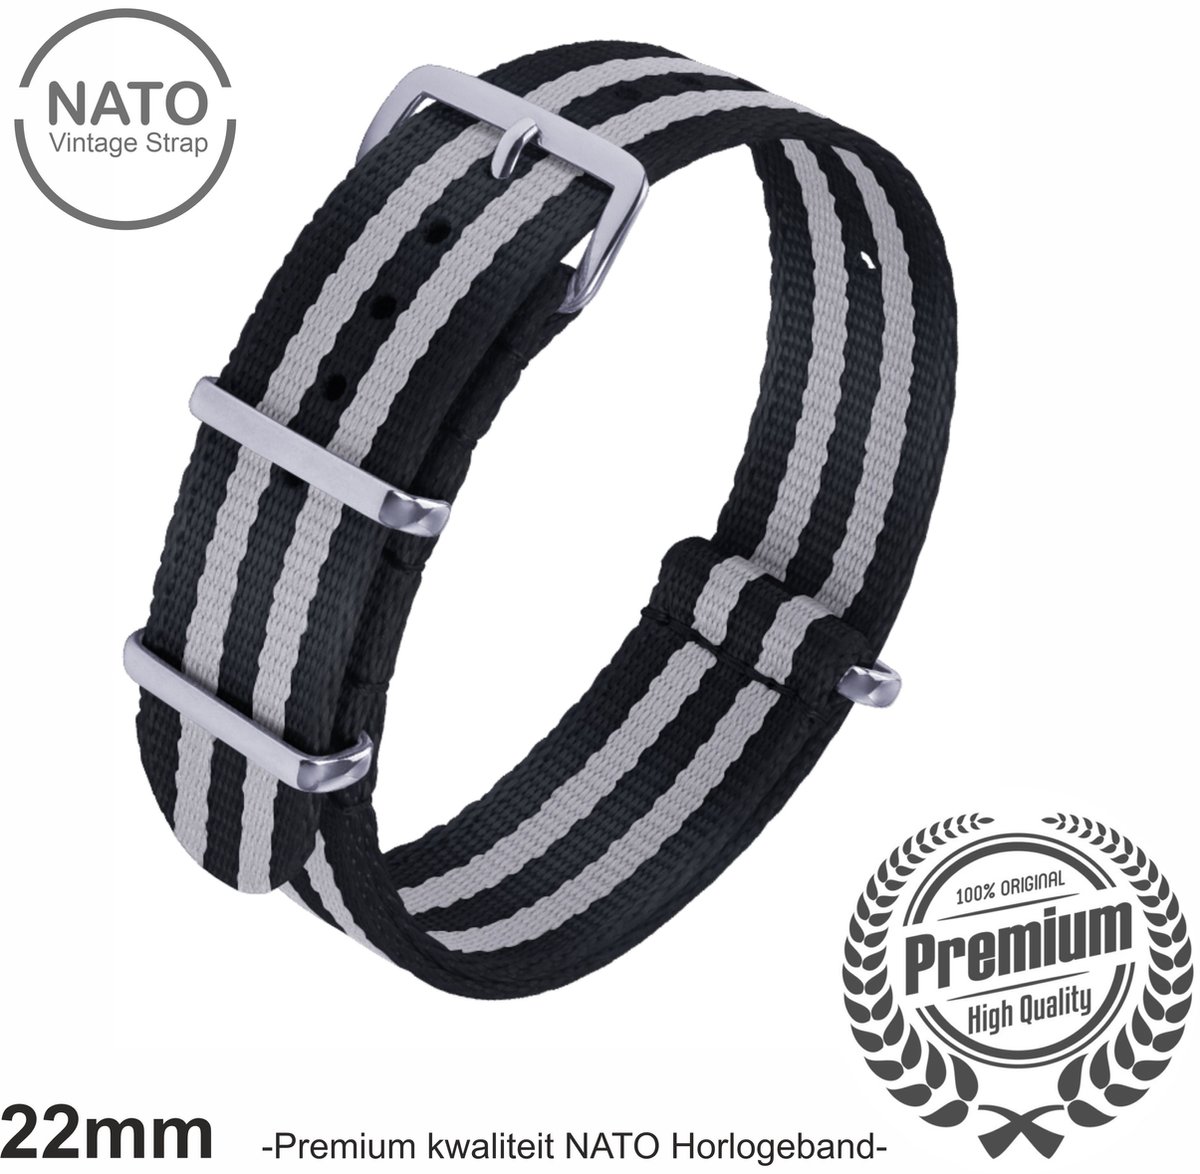 22mm Premium Nato horlogeband Grijs Zwart gestreept - Vintage James Bond look- Nato Strap collectie - Mannen - Horlogebanden - 22 mm bandbreedte